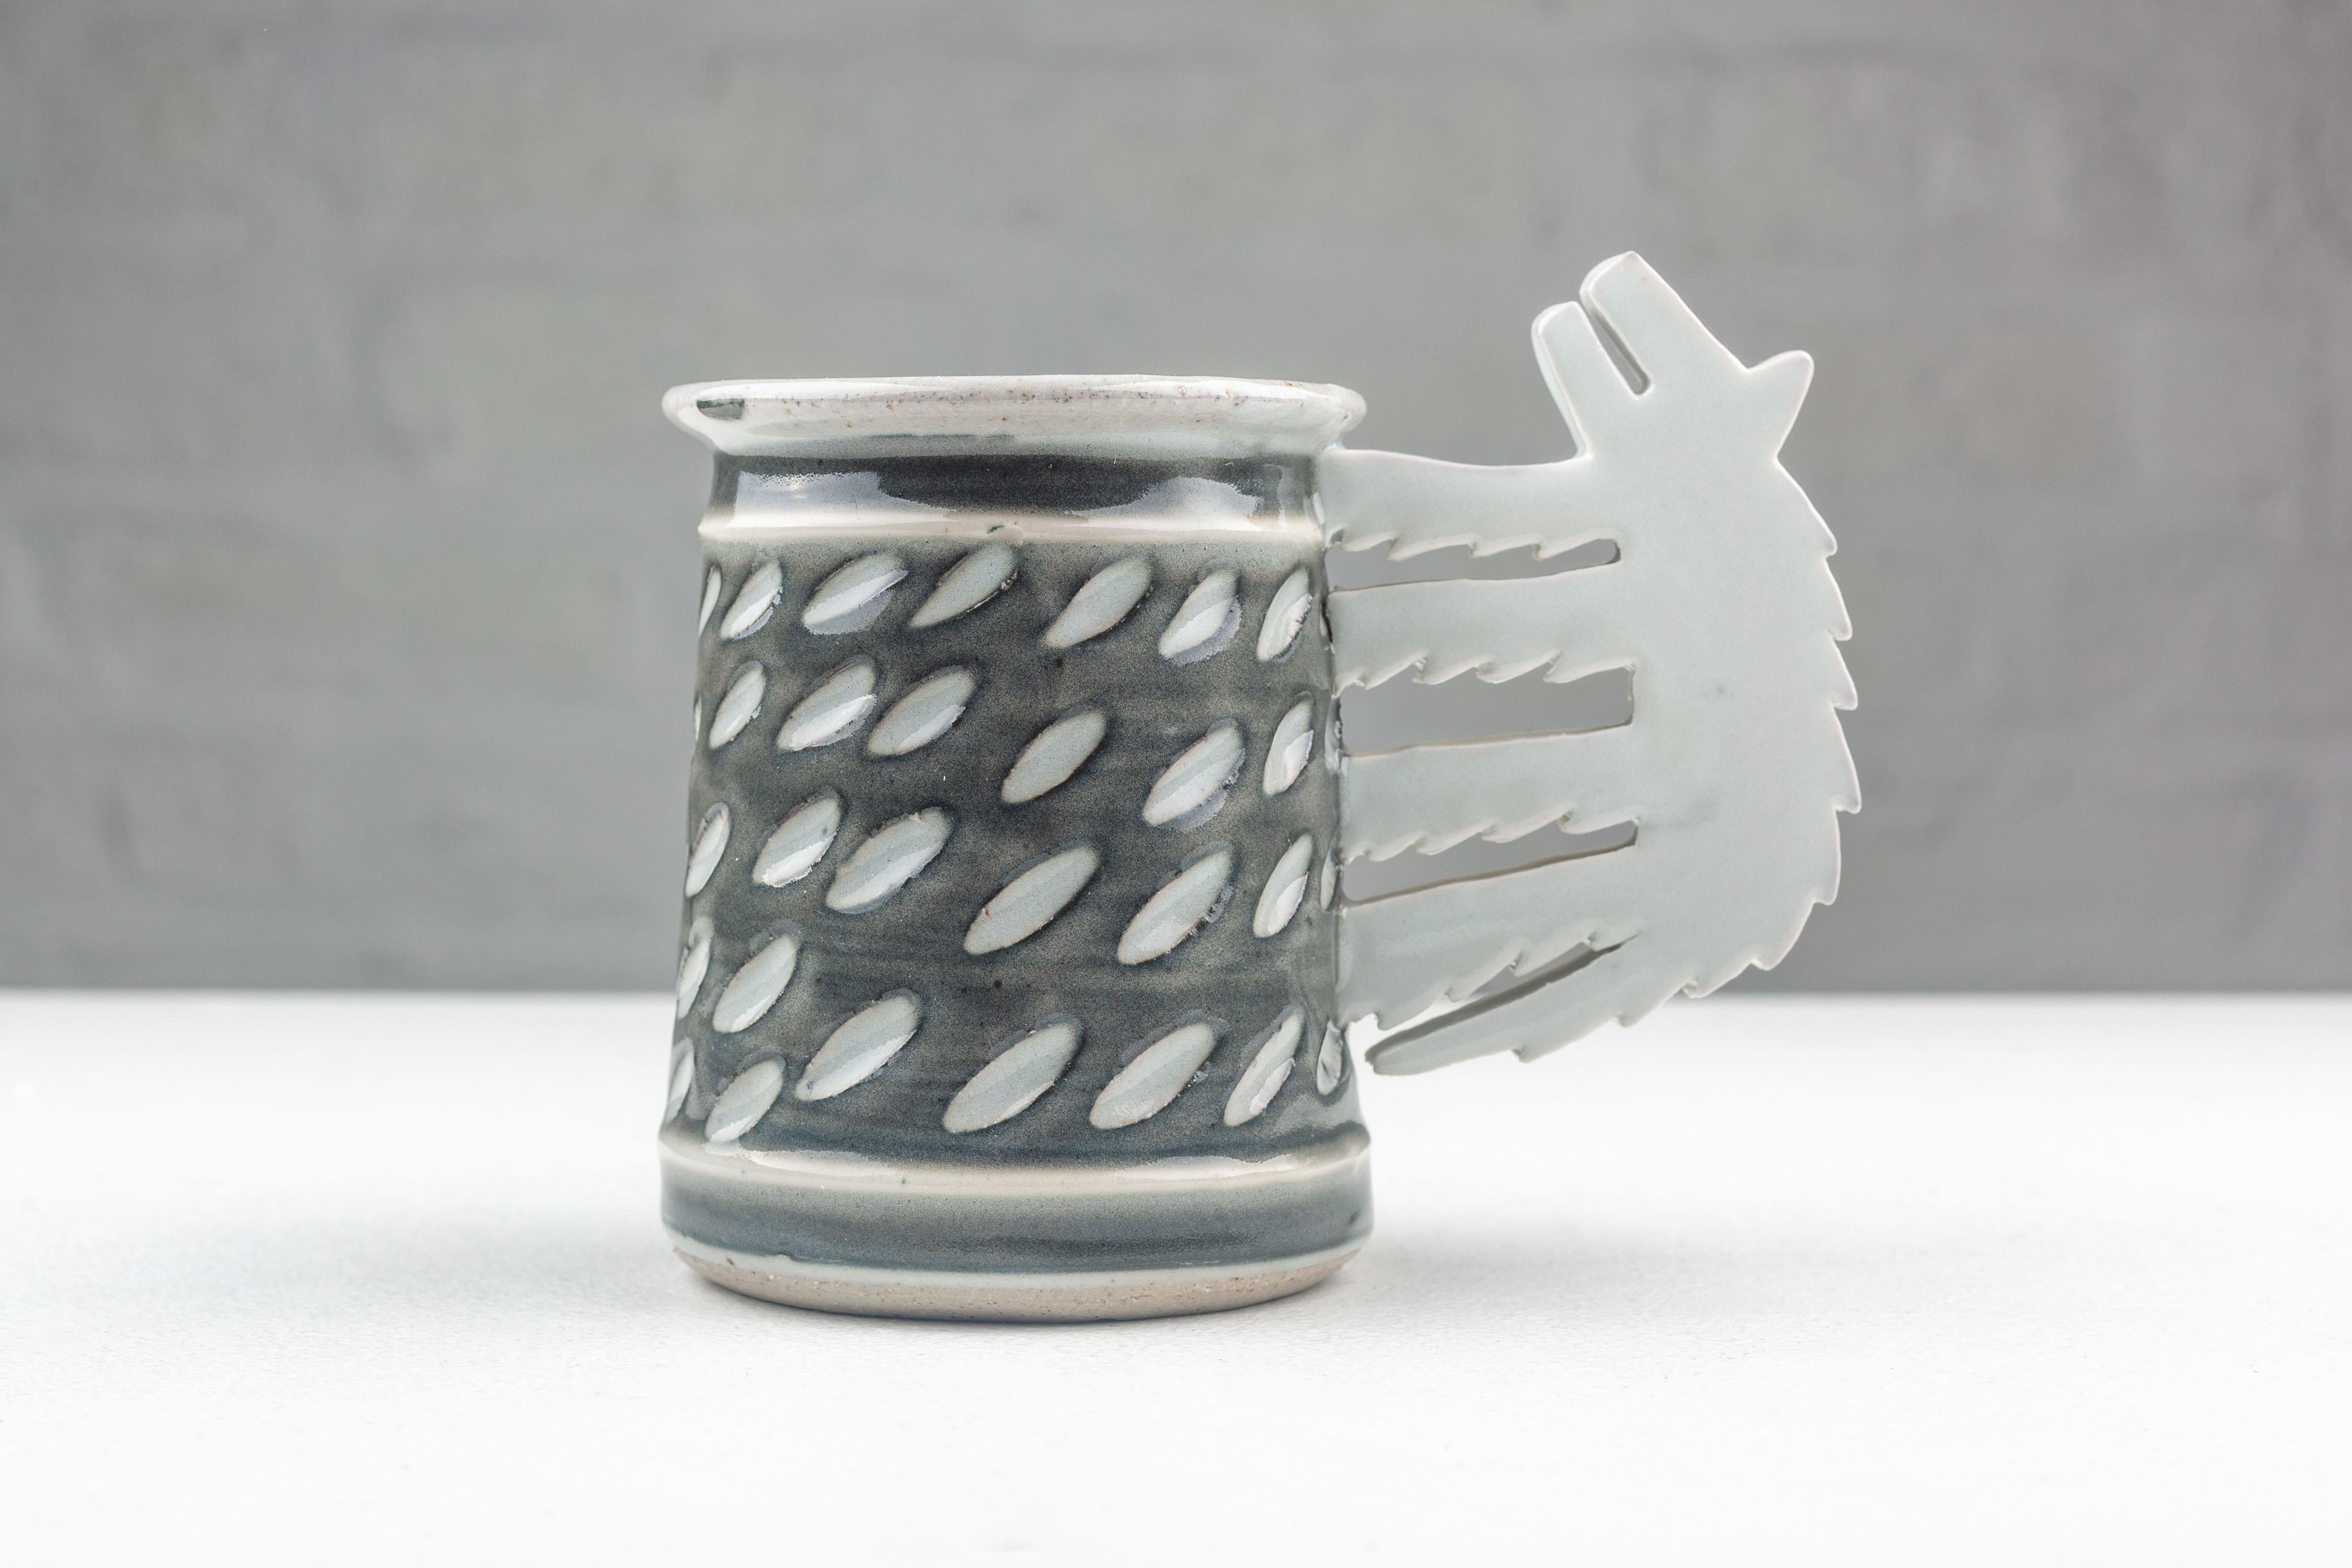 Fabriquée avec une sensibilité post-moderne, cette tasse American Studio Pottery est la création de Steve et Miky Cunningham, fabriquée à la main dans leur atelier de l'Iowa en 1991. Cette pièce est une étude sur la fusion de la fonction et de la